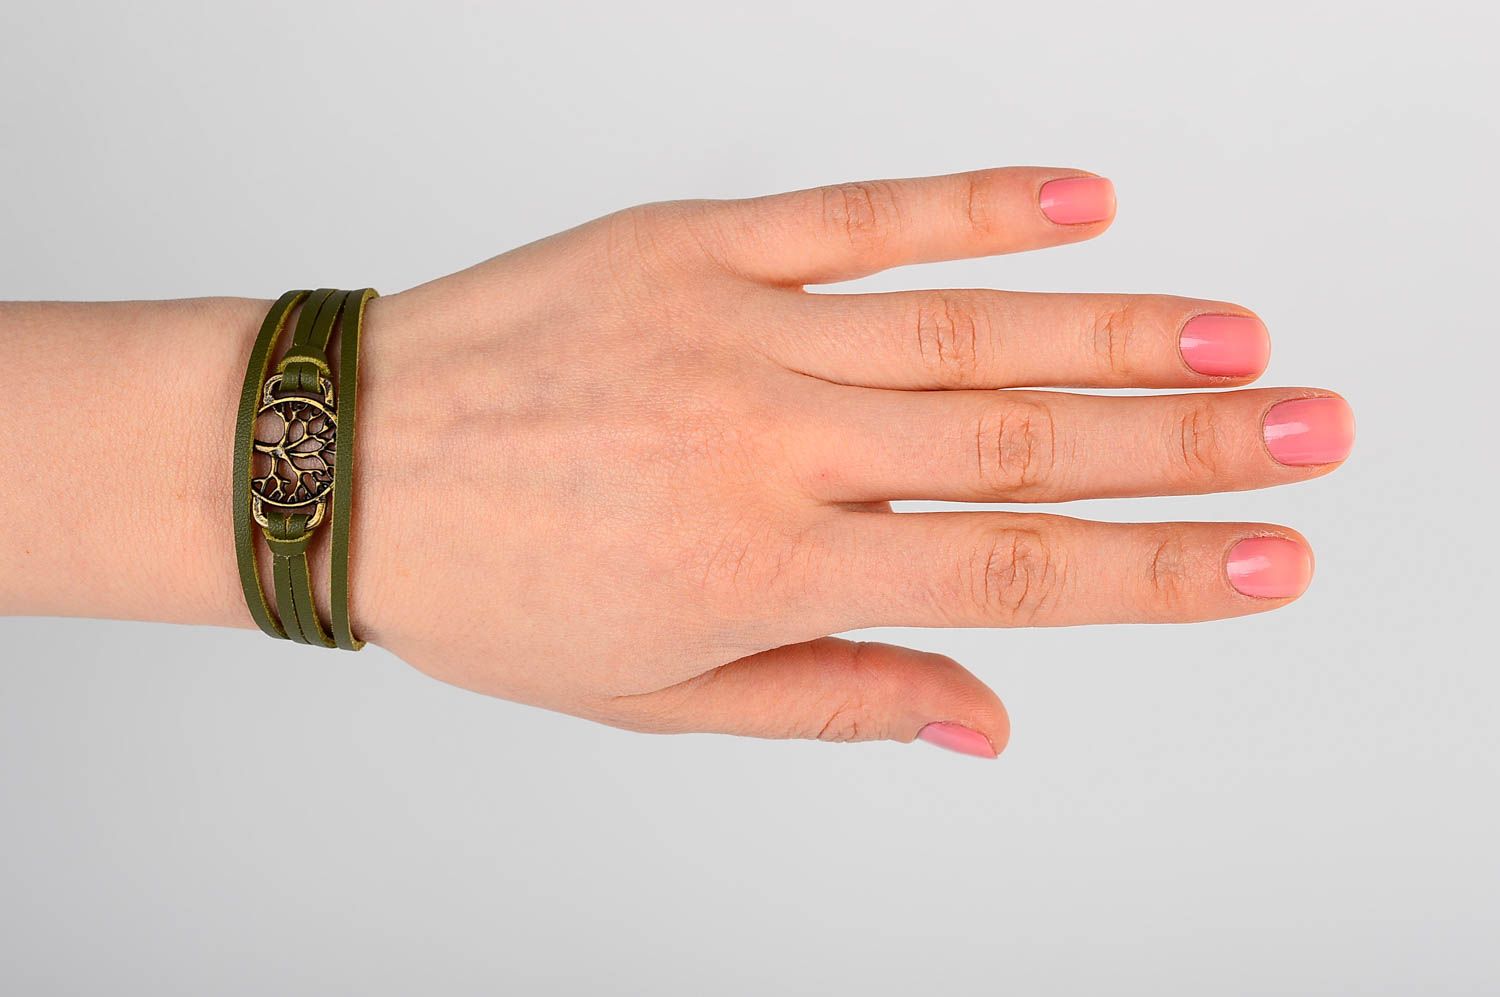 Кожаный браслет хэнд мэйд браслет на руку зеленый с металлом украшение из кожи фото 2